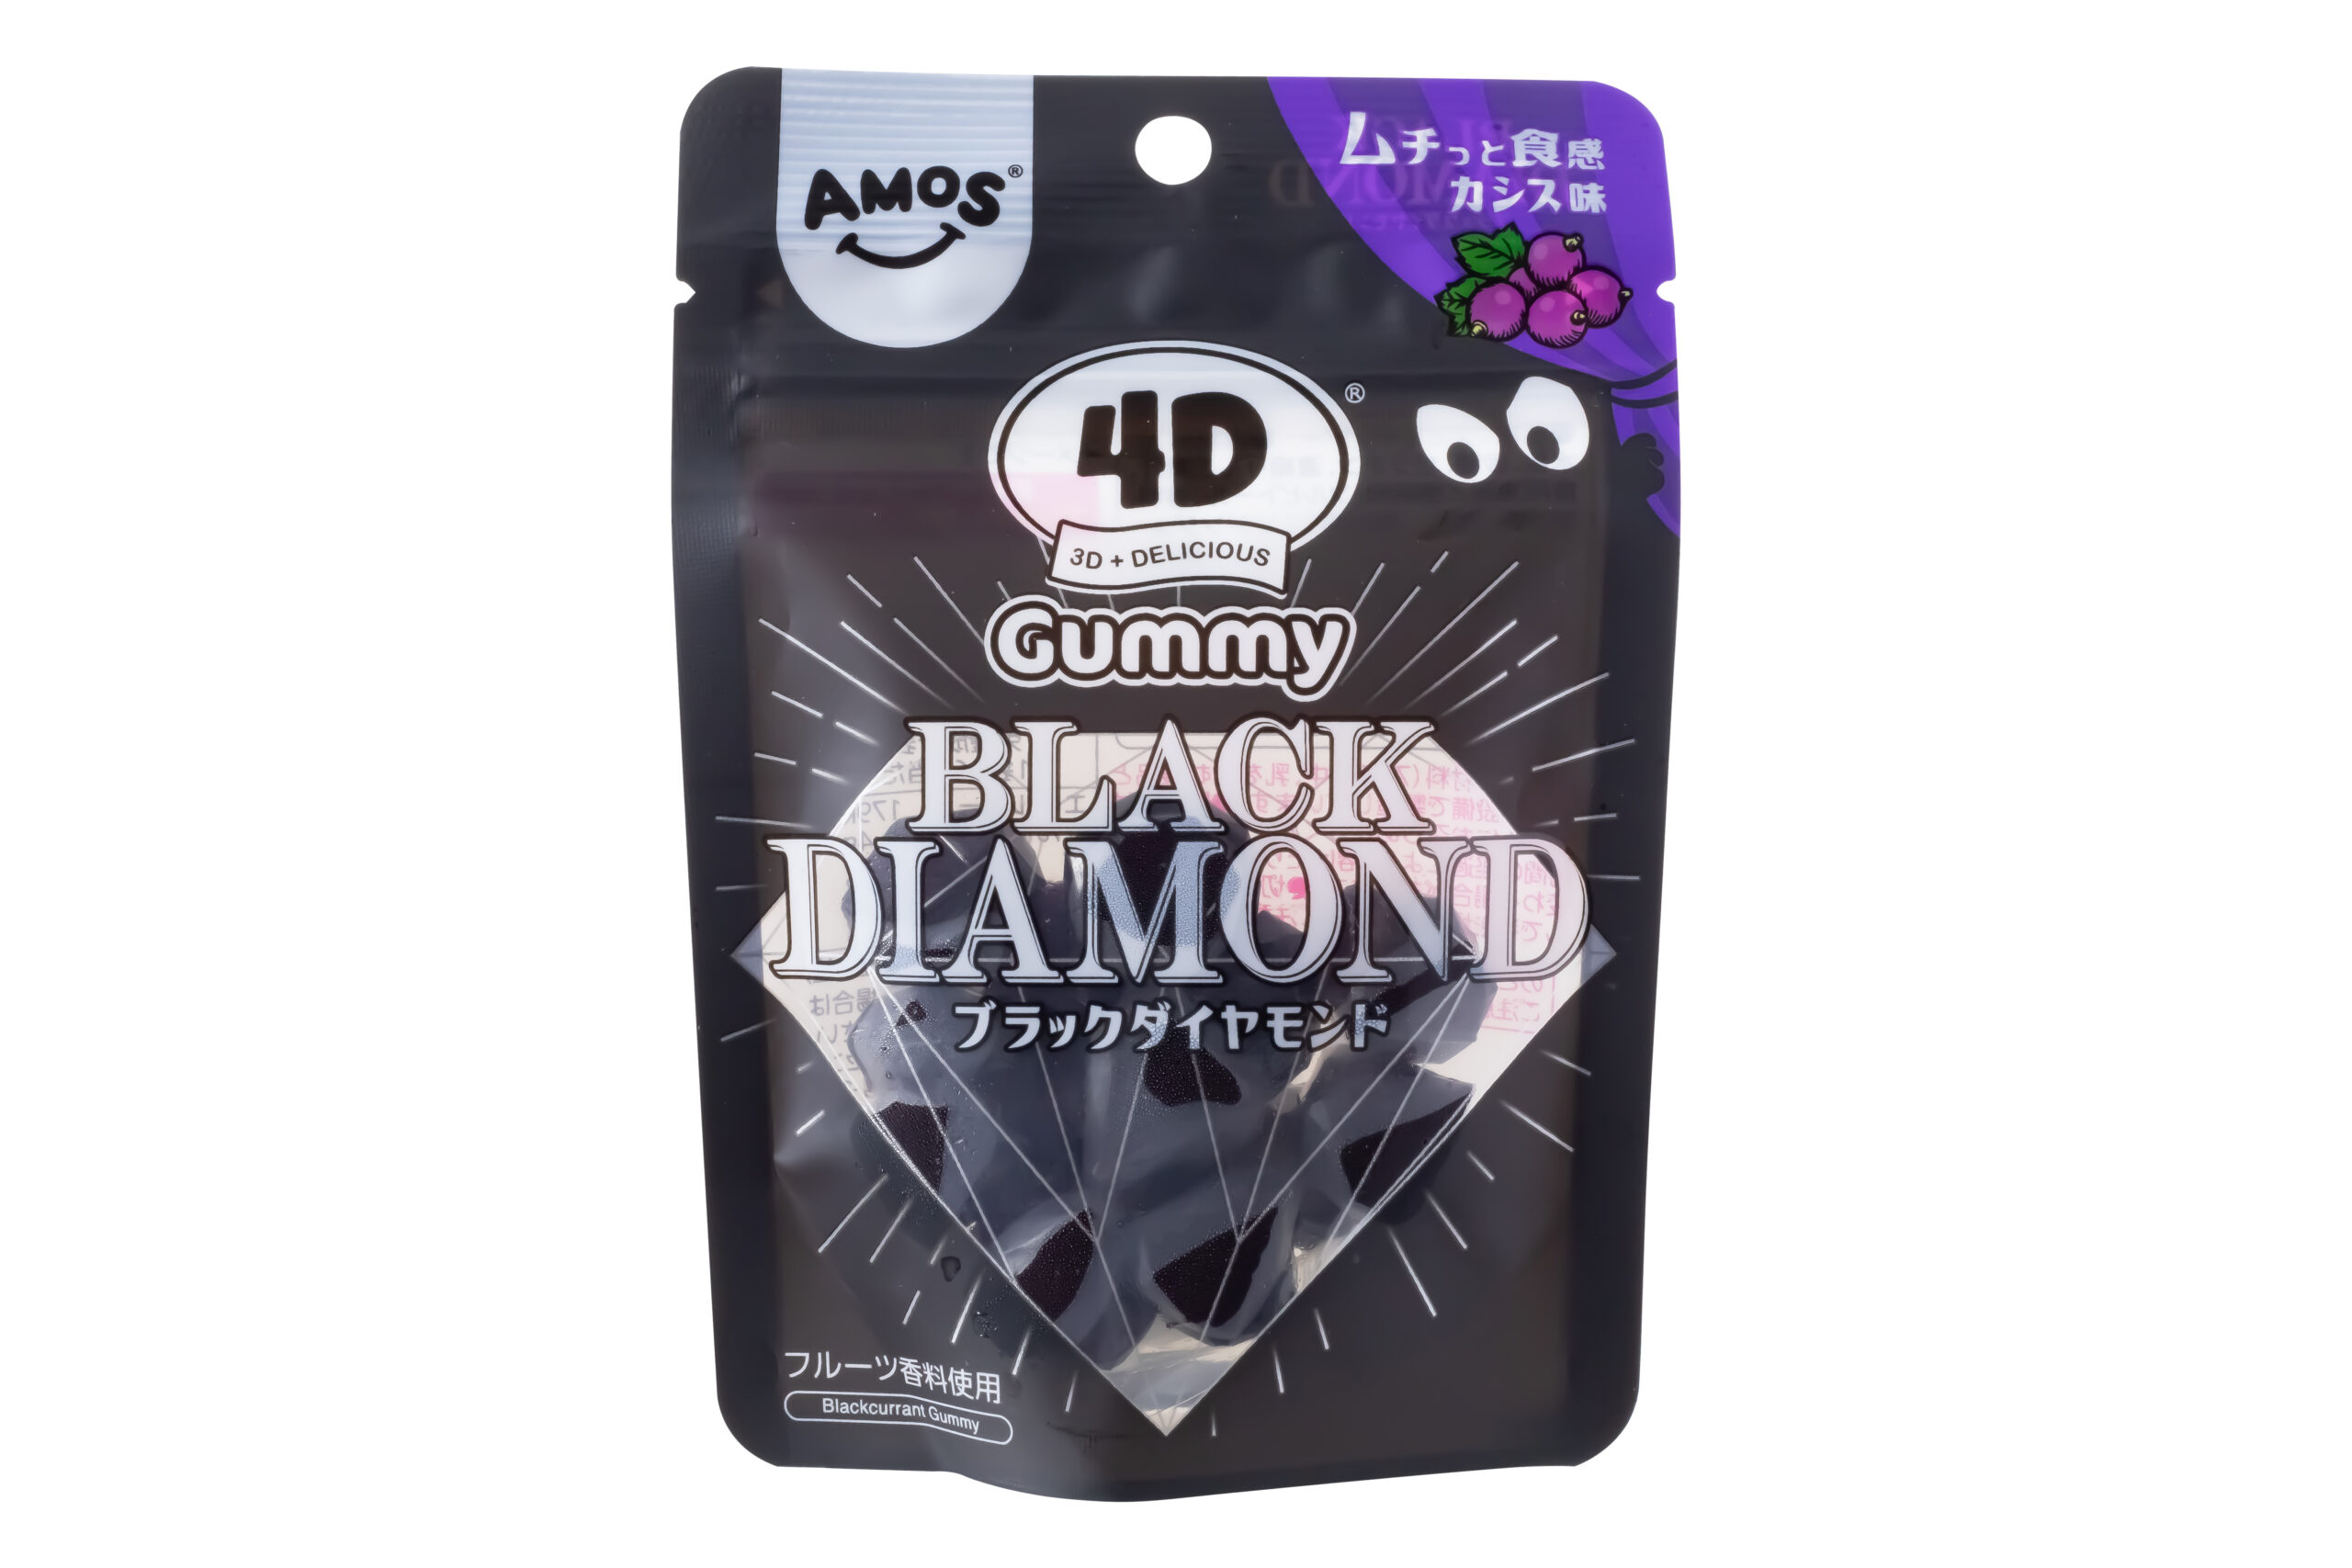 カンロ『4Dグミ ブラックダイヤモンド』